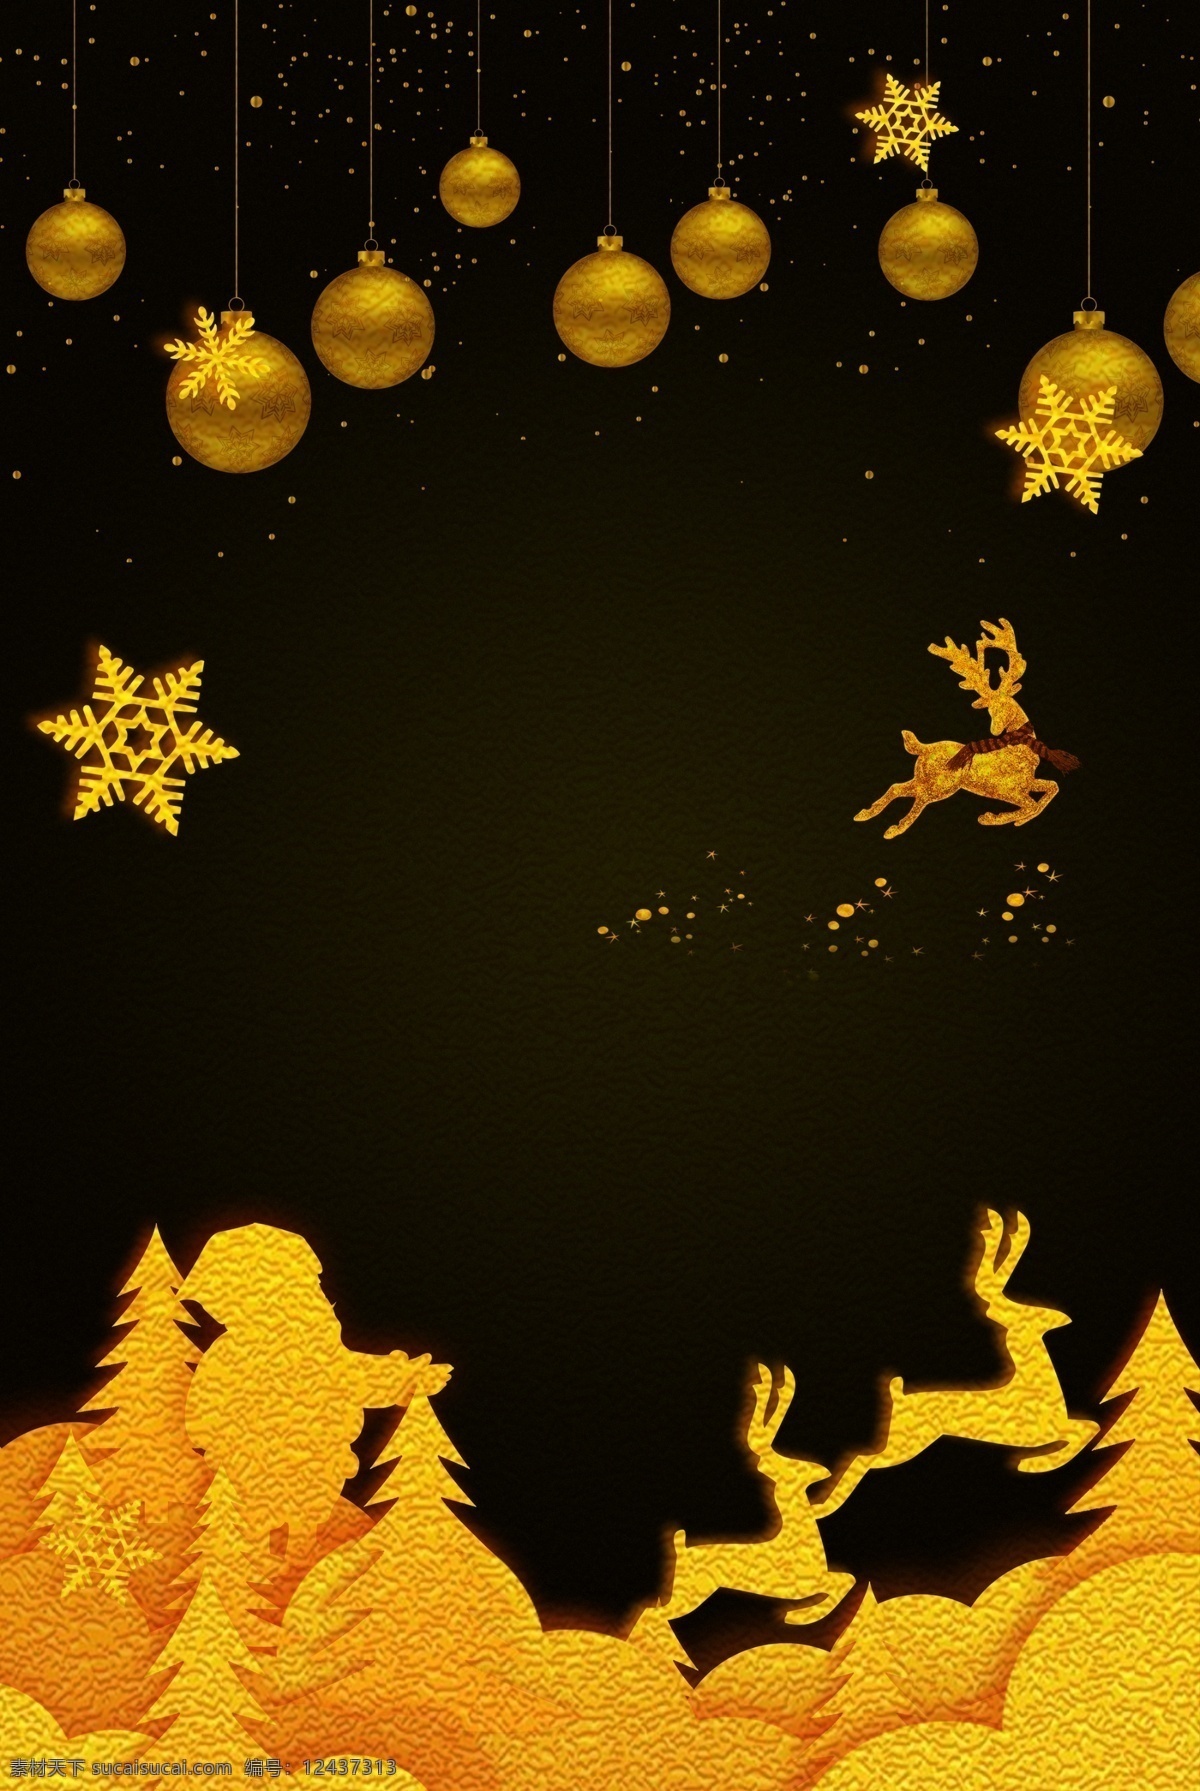 黑金 圣诞 主题 背景 圣诞节 清新背景 背景图 清新 创意 节日背景 雪花 麋鹿 圣诞背景 黑金背景 背景设计 通用背景 特邀背景